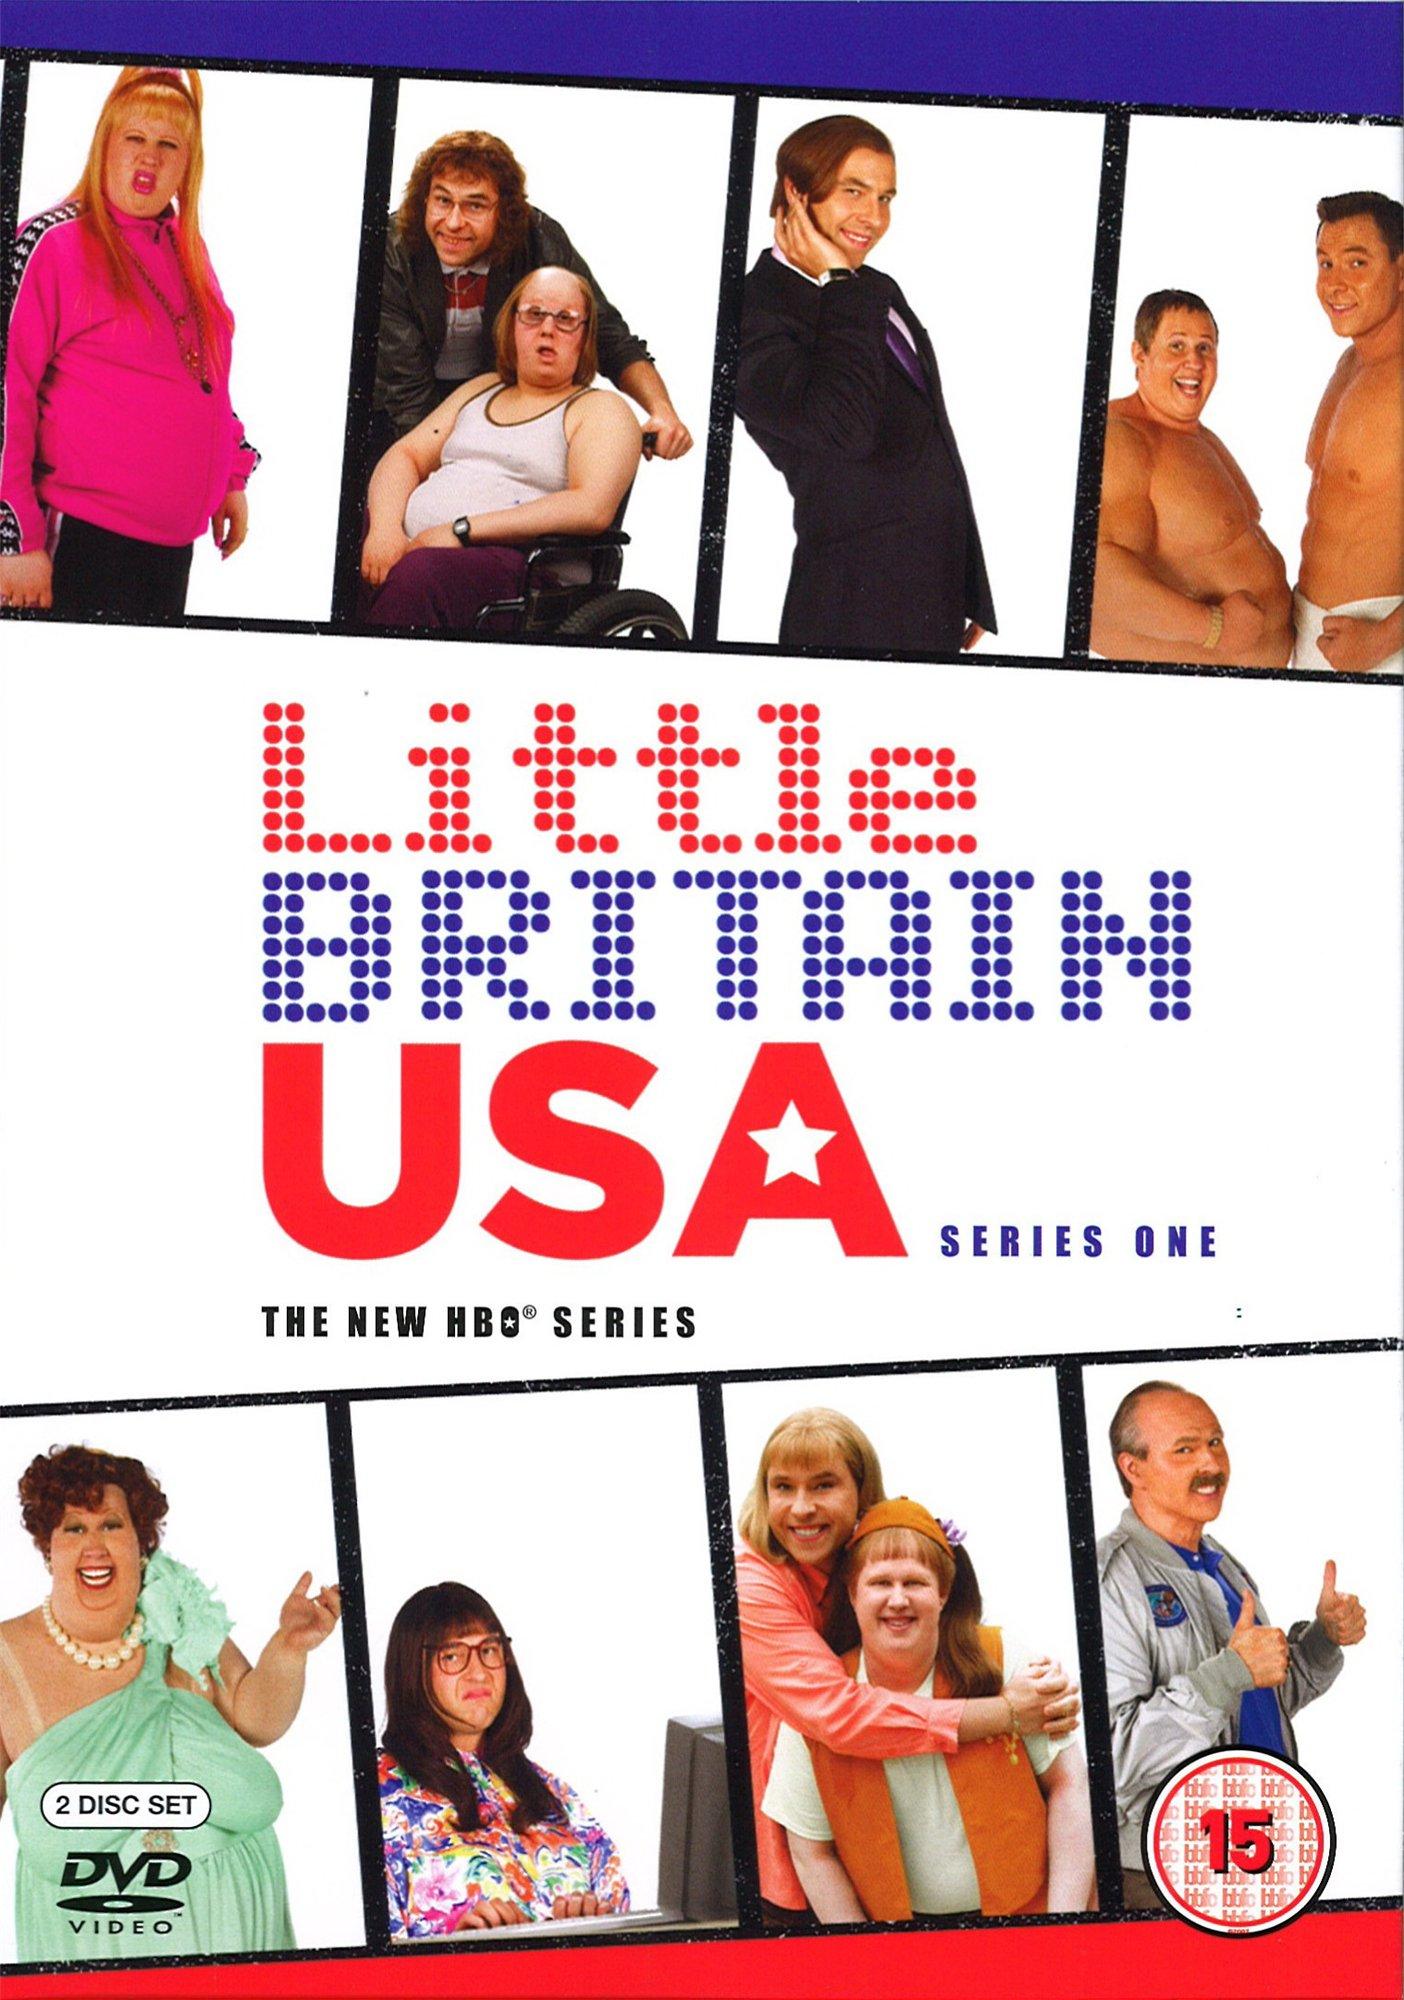 Постер фильма Ваша Бриташа в Америке | Little Britain USA